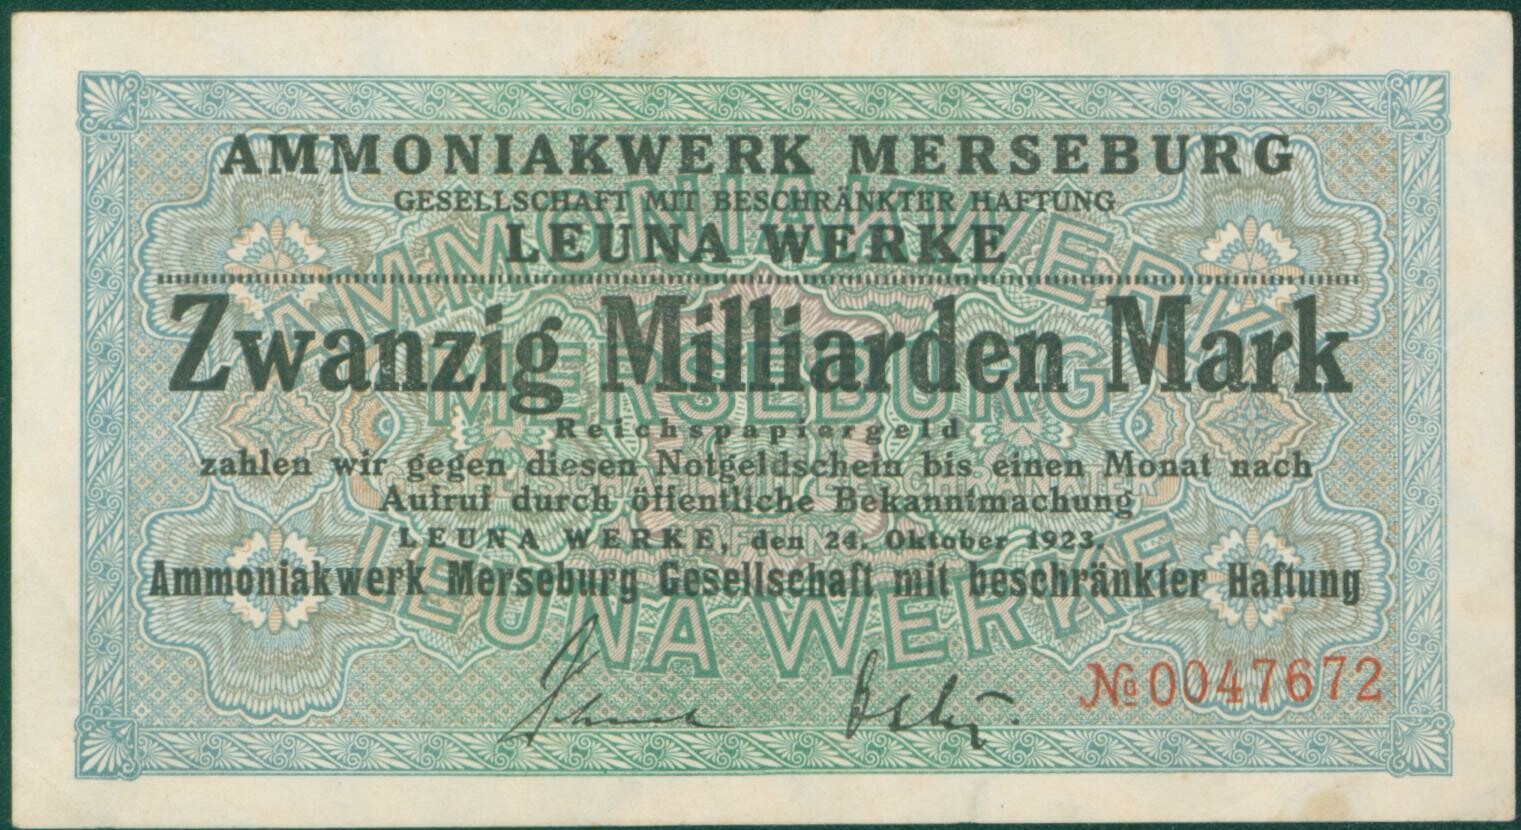 Notgeldschein Ammoniakwerk Merseburg "Zwanzig Milliarden Mark", No. 0047672 (Kulturhistorisches Museum Schloss Merseburg CC BY-NC-SA)